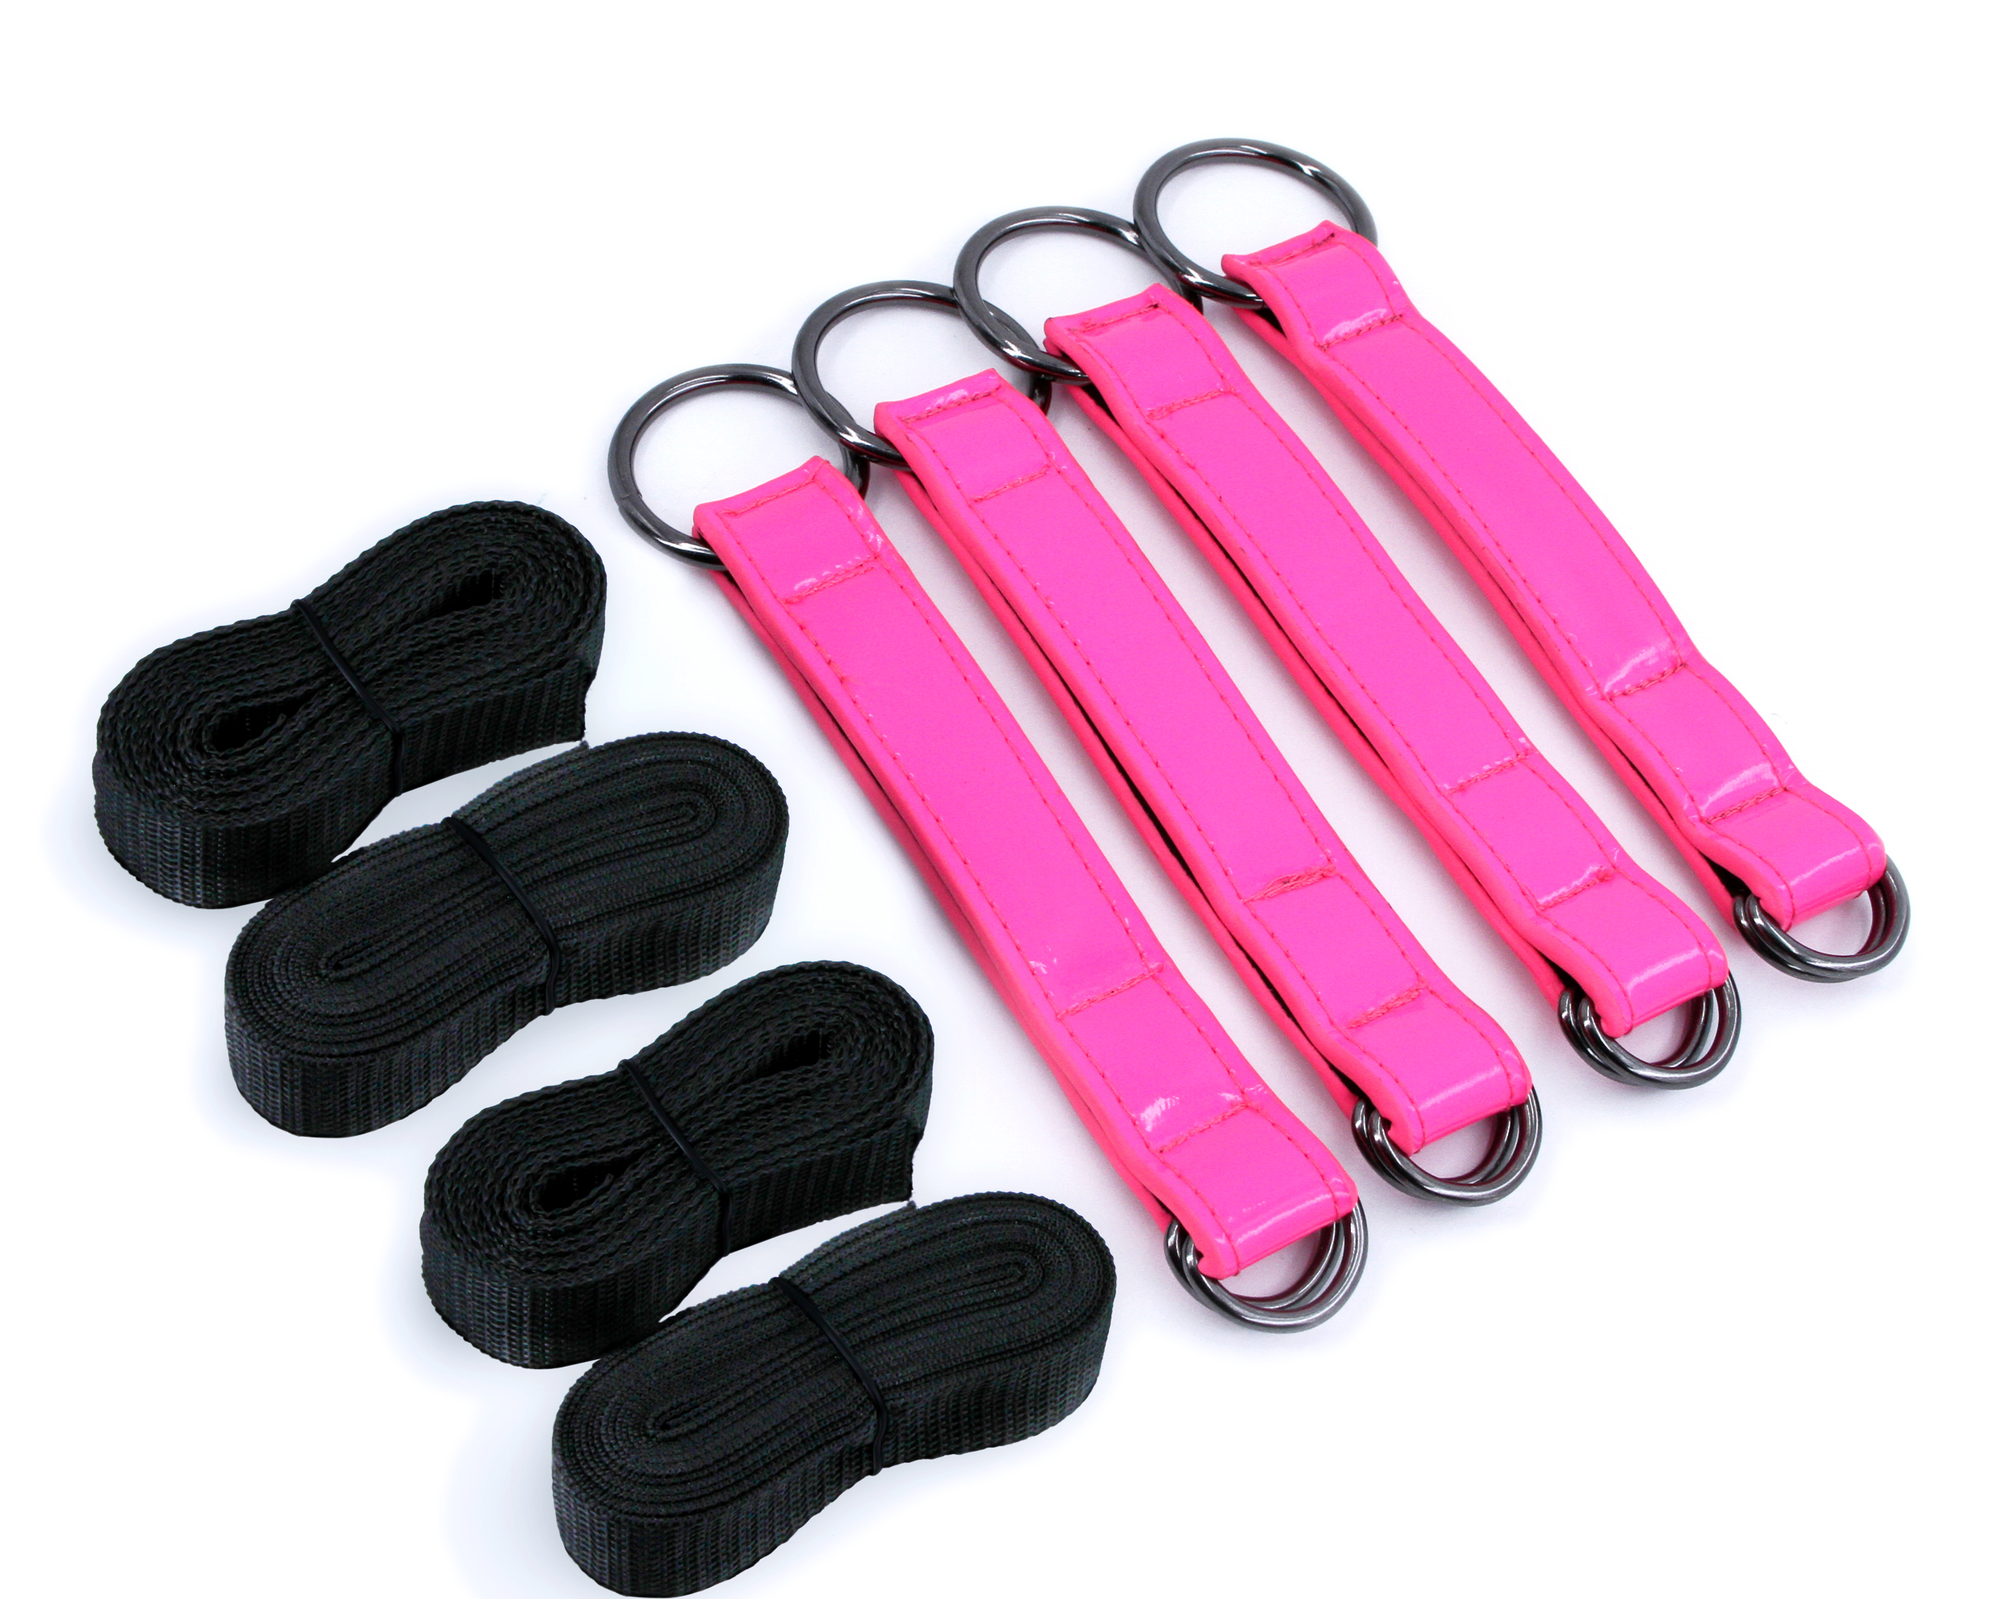 straps, nylon tie down straps